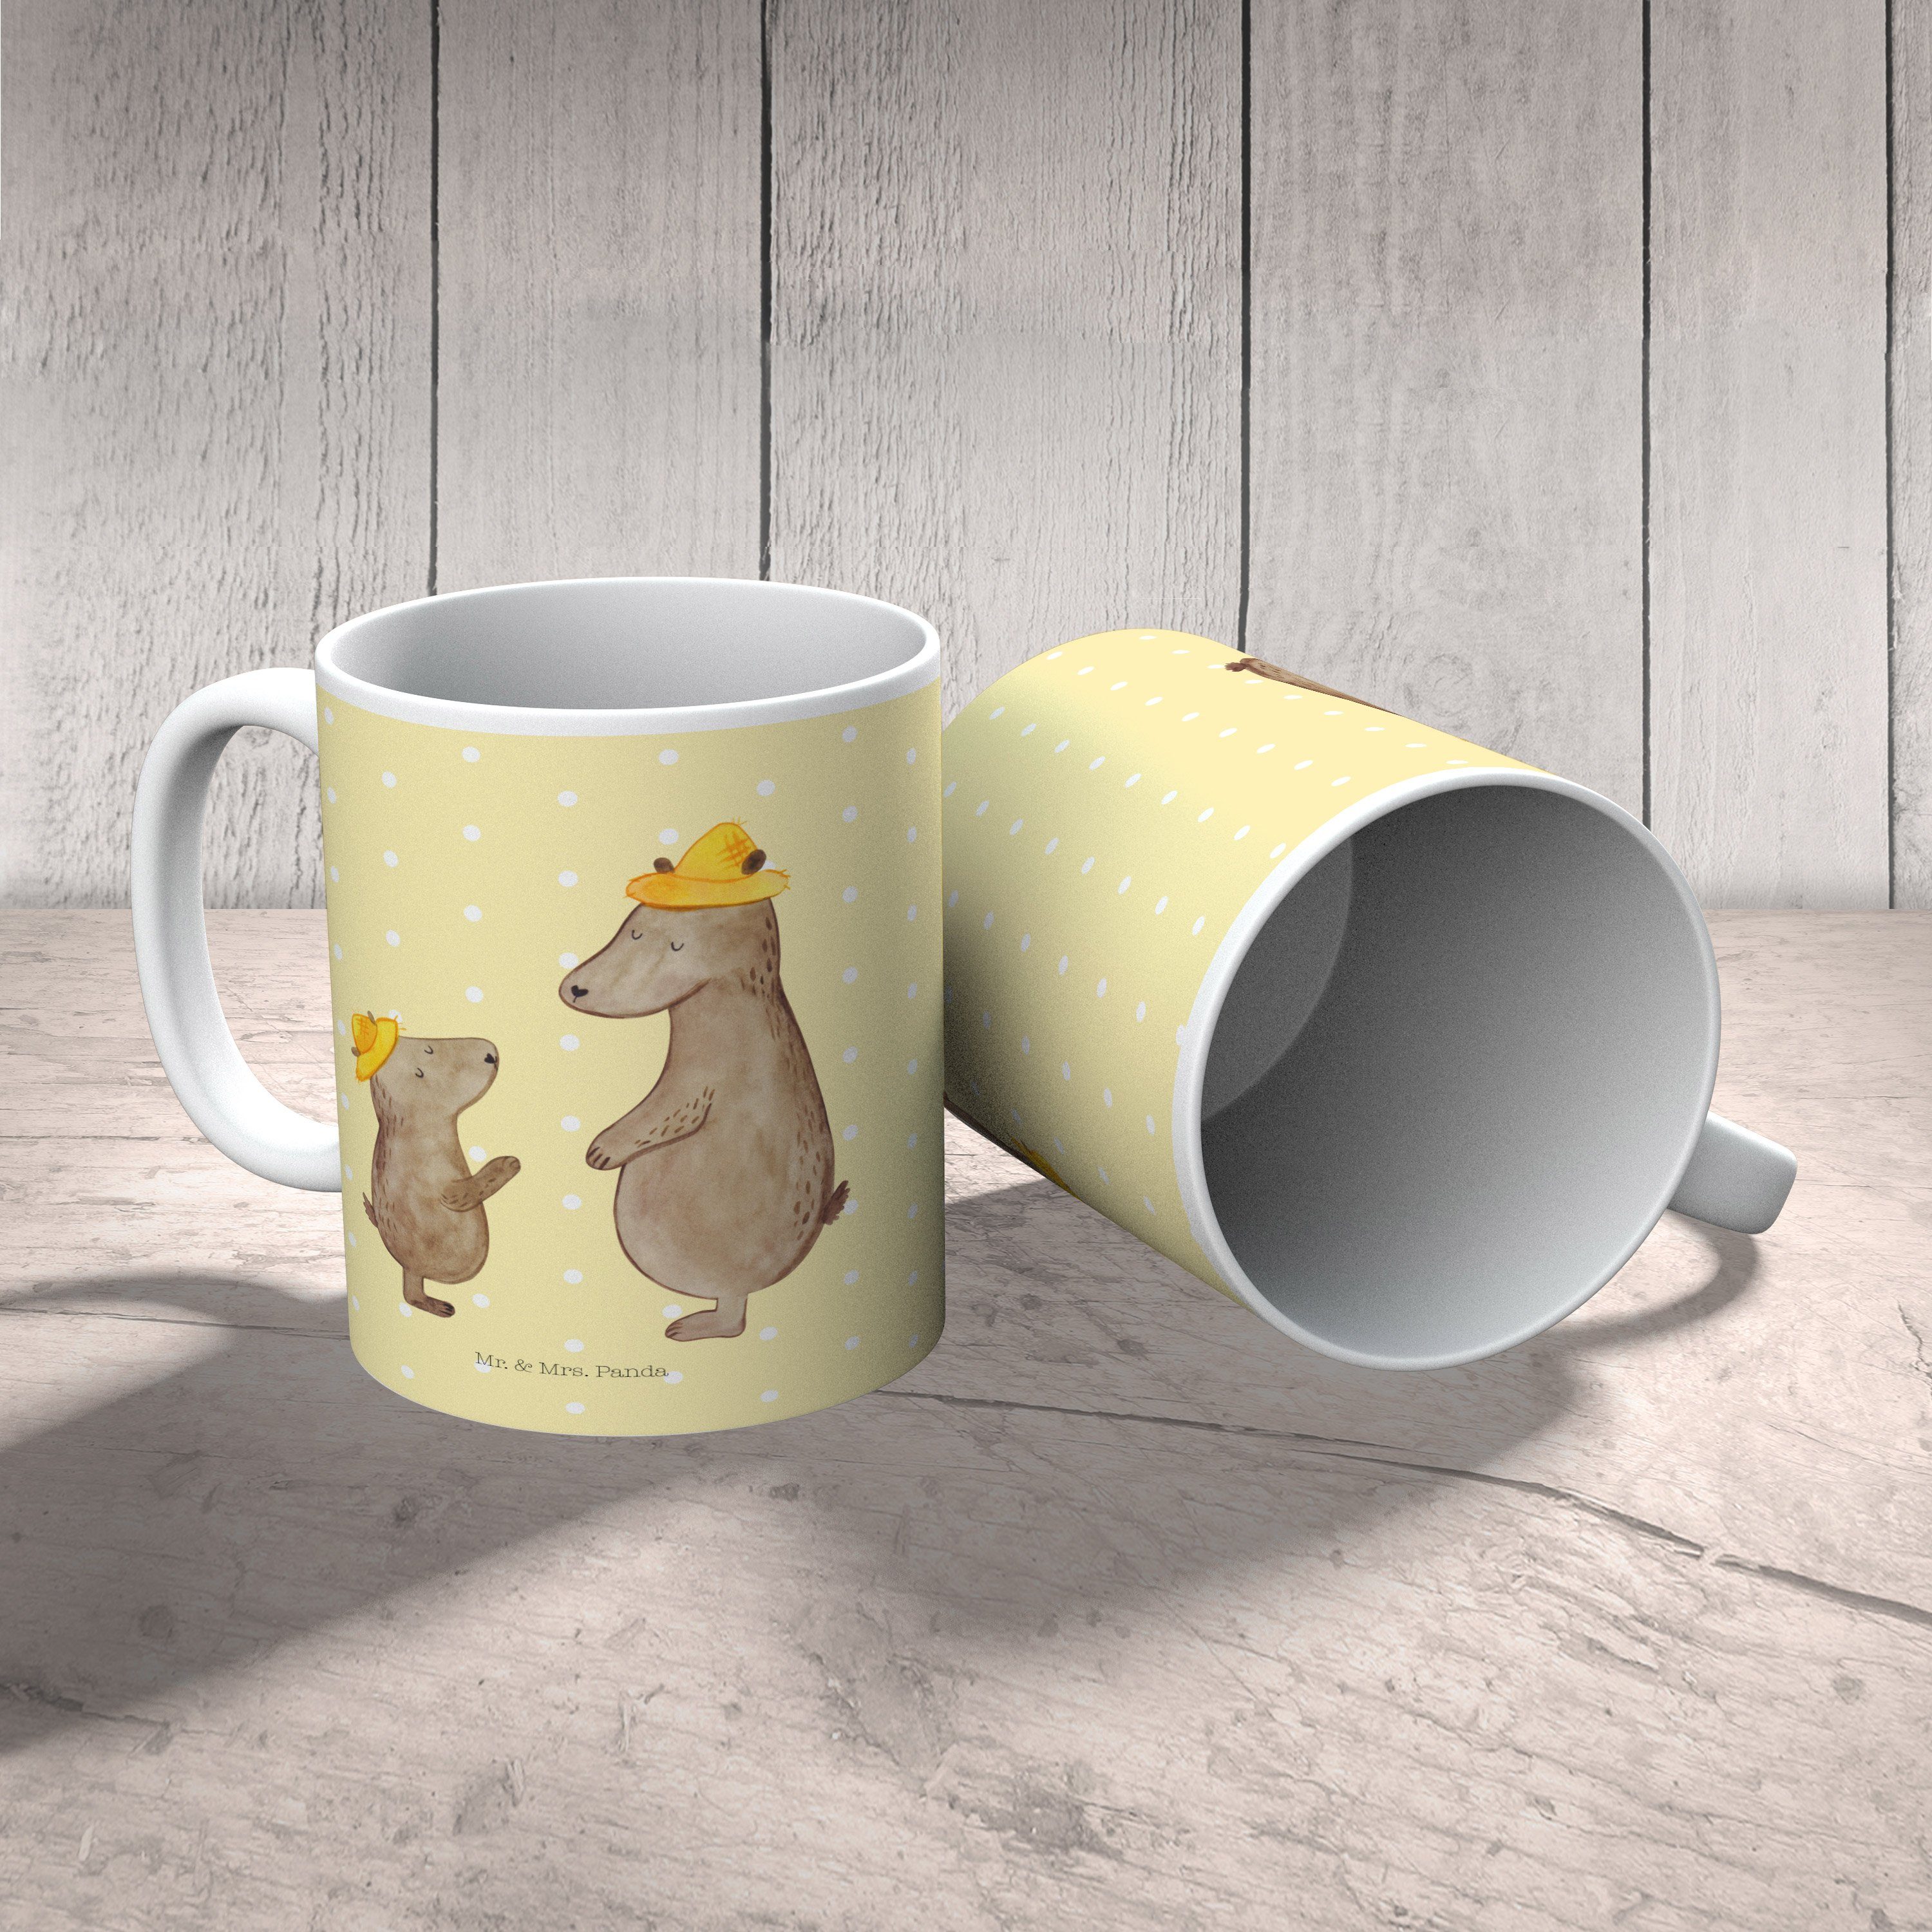 Mr. & Mrs. Panda Tasse Keramik Hut Gelb Pastell - Geschenk, Keramiktasse, mit Motive, Tasse - Bären